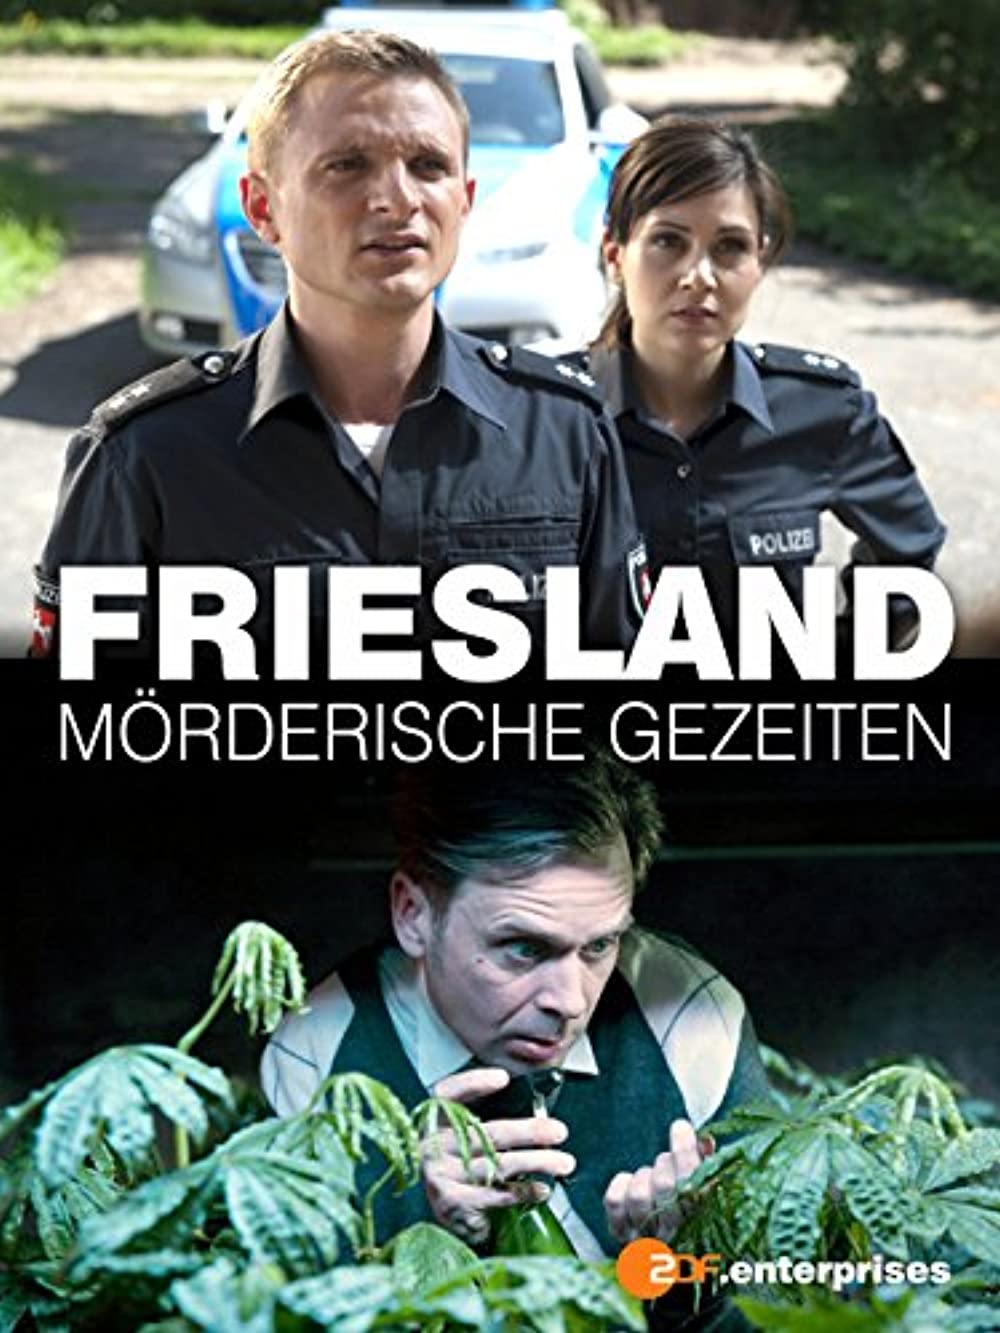 Filmbeschreibung zu Friesland - Mörderische Gezeiten